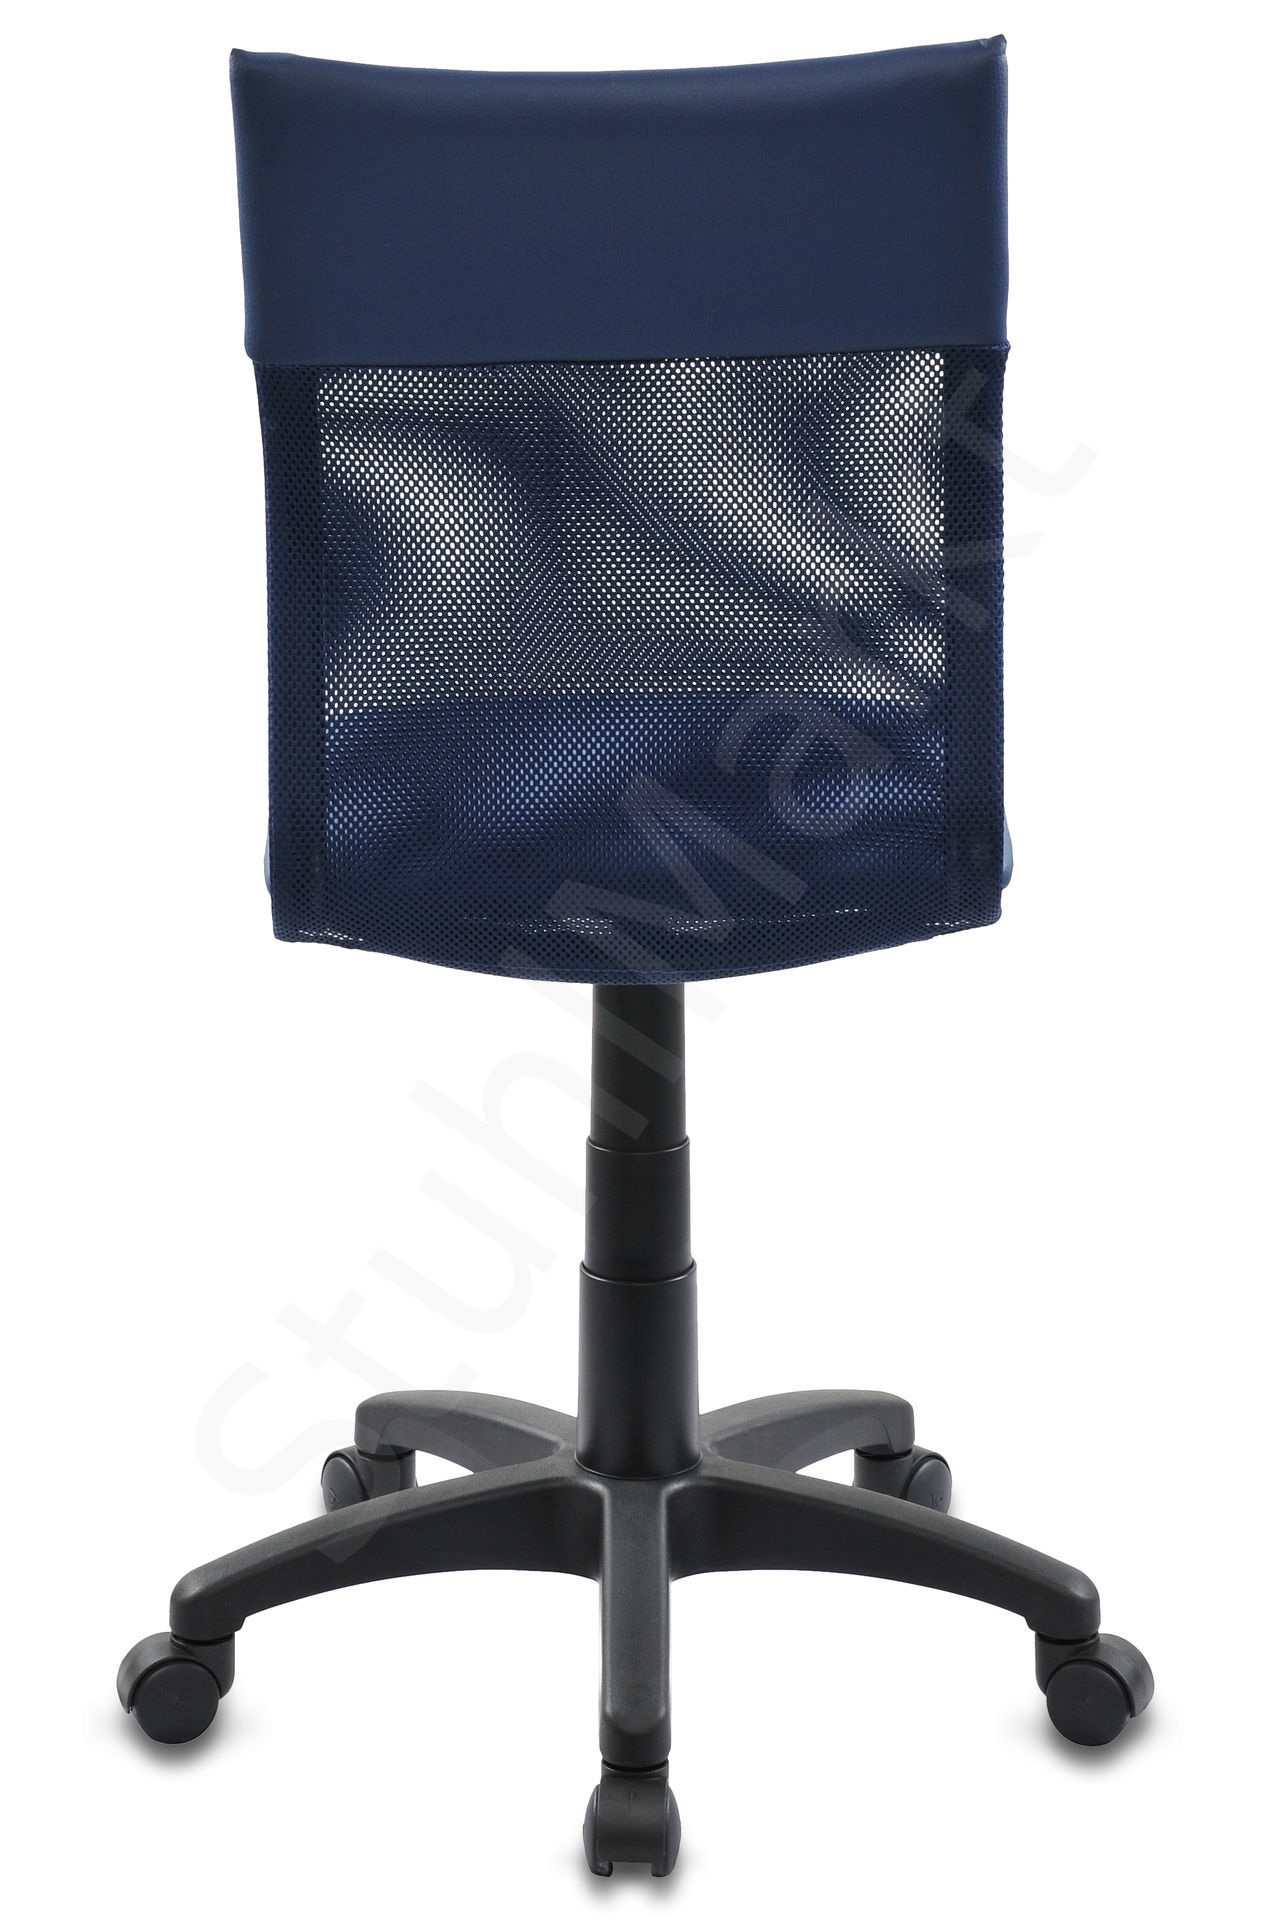  Кресло для персонала Бюрократ 399 синее 6214